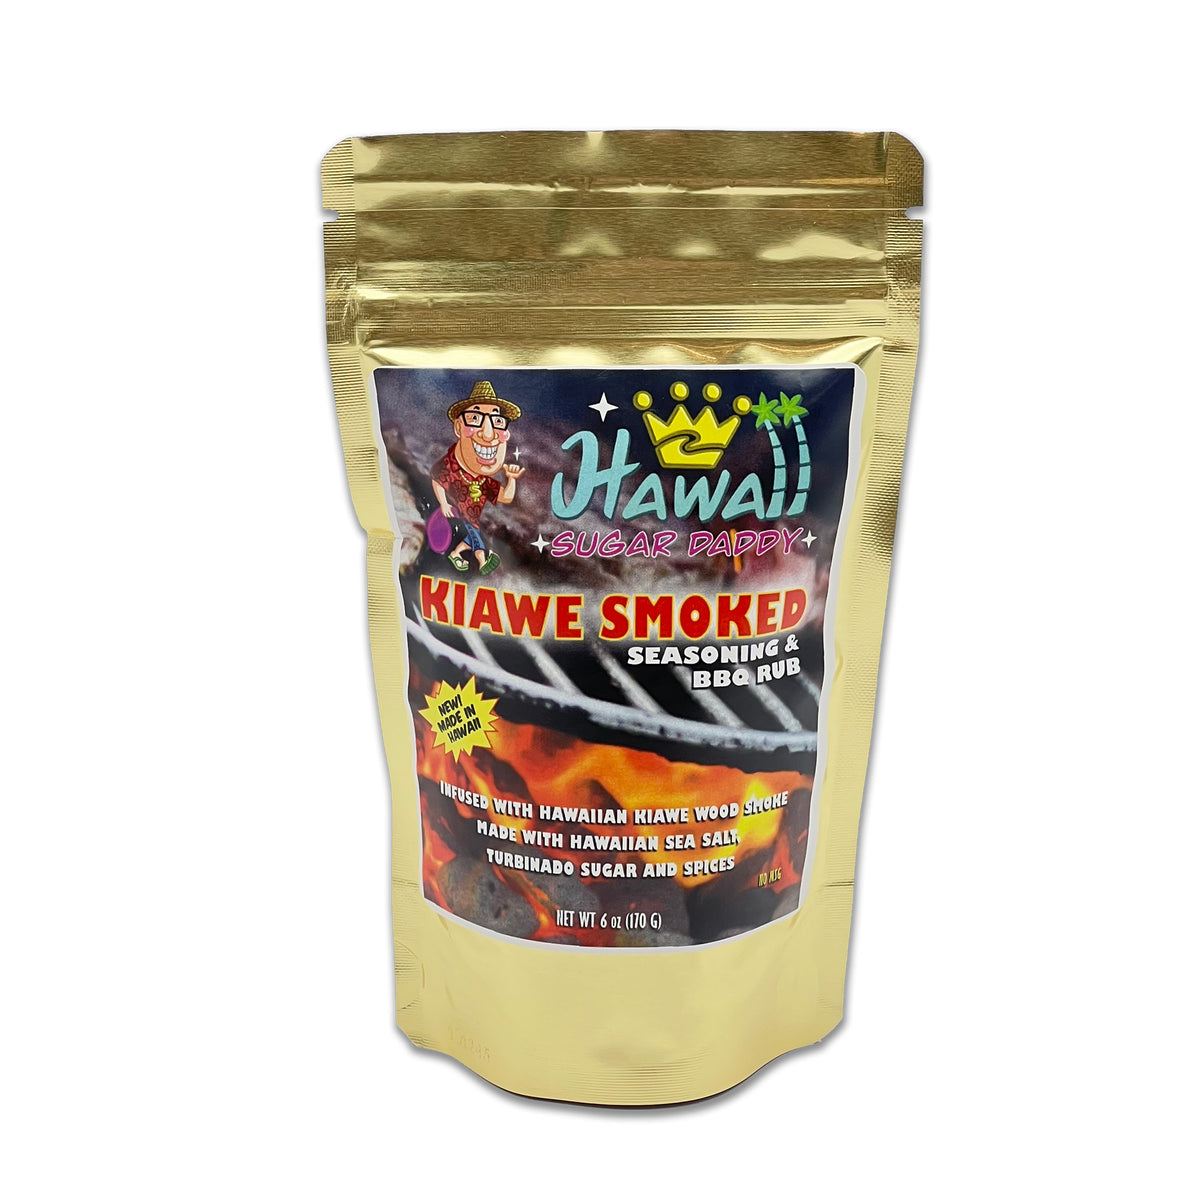 Pop-Up Mākeke - Hawaii Fry-O Food Group - Hawaii Sugar Daddy Kiawe Smoked Seasoning &amp; BBQ Rub